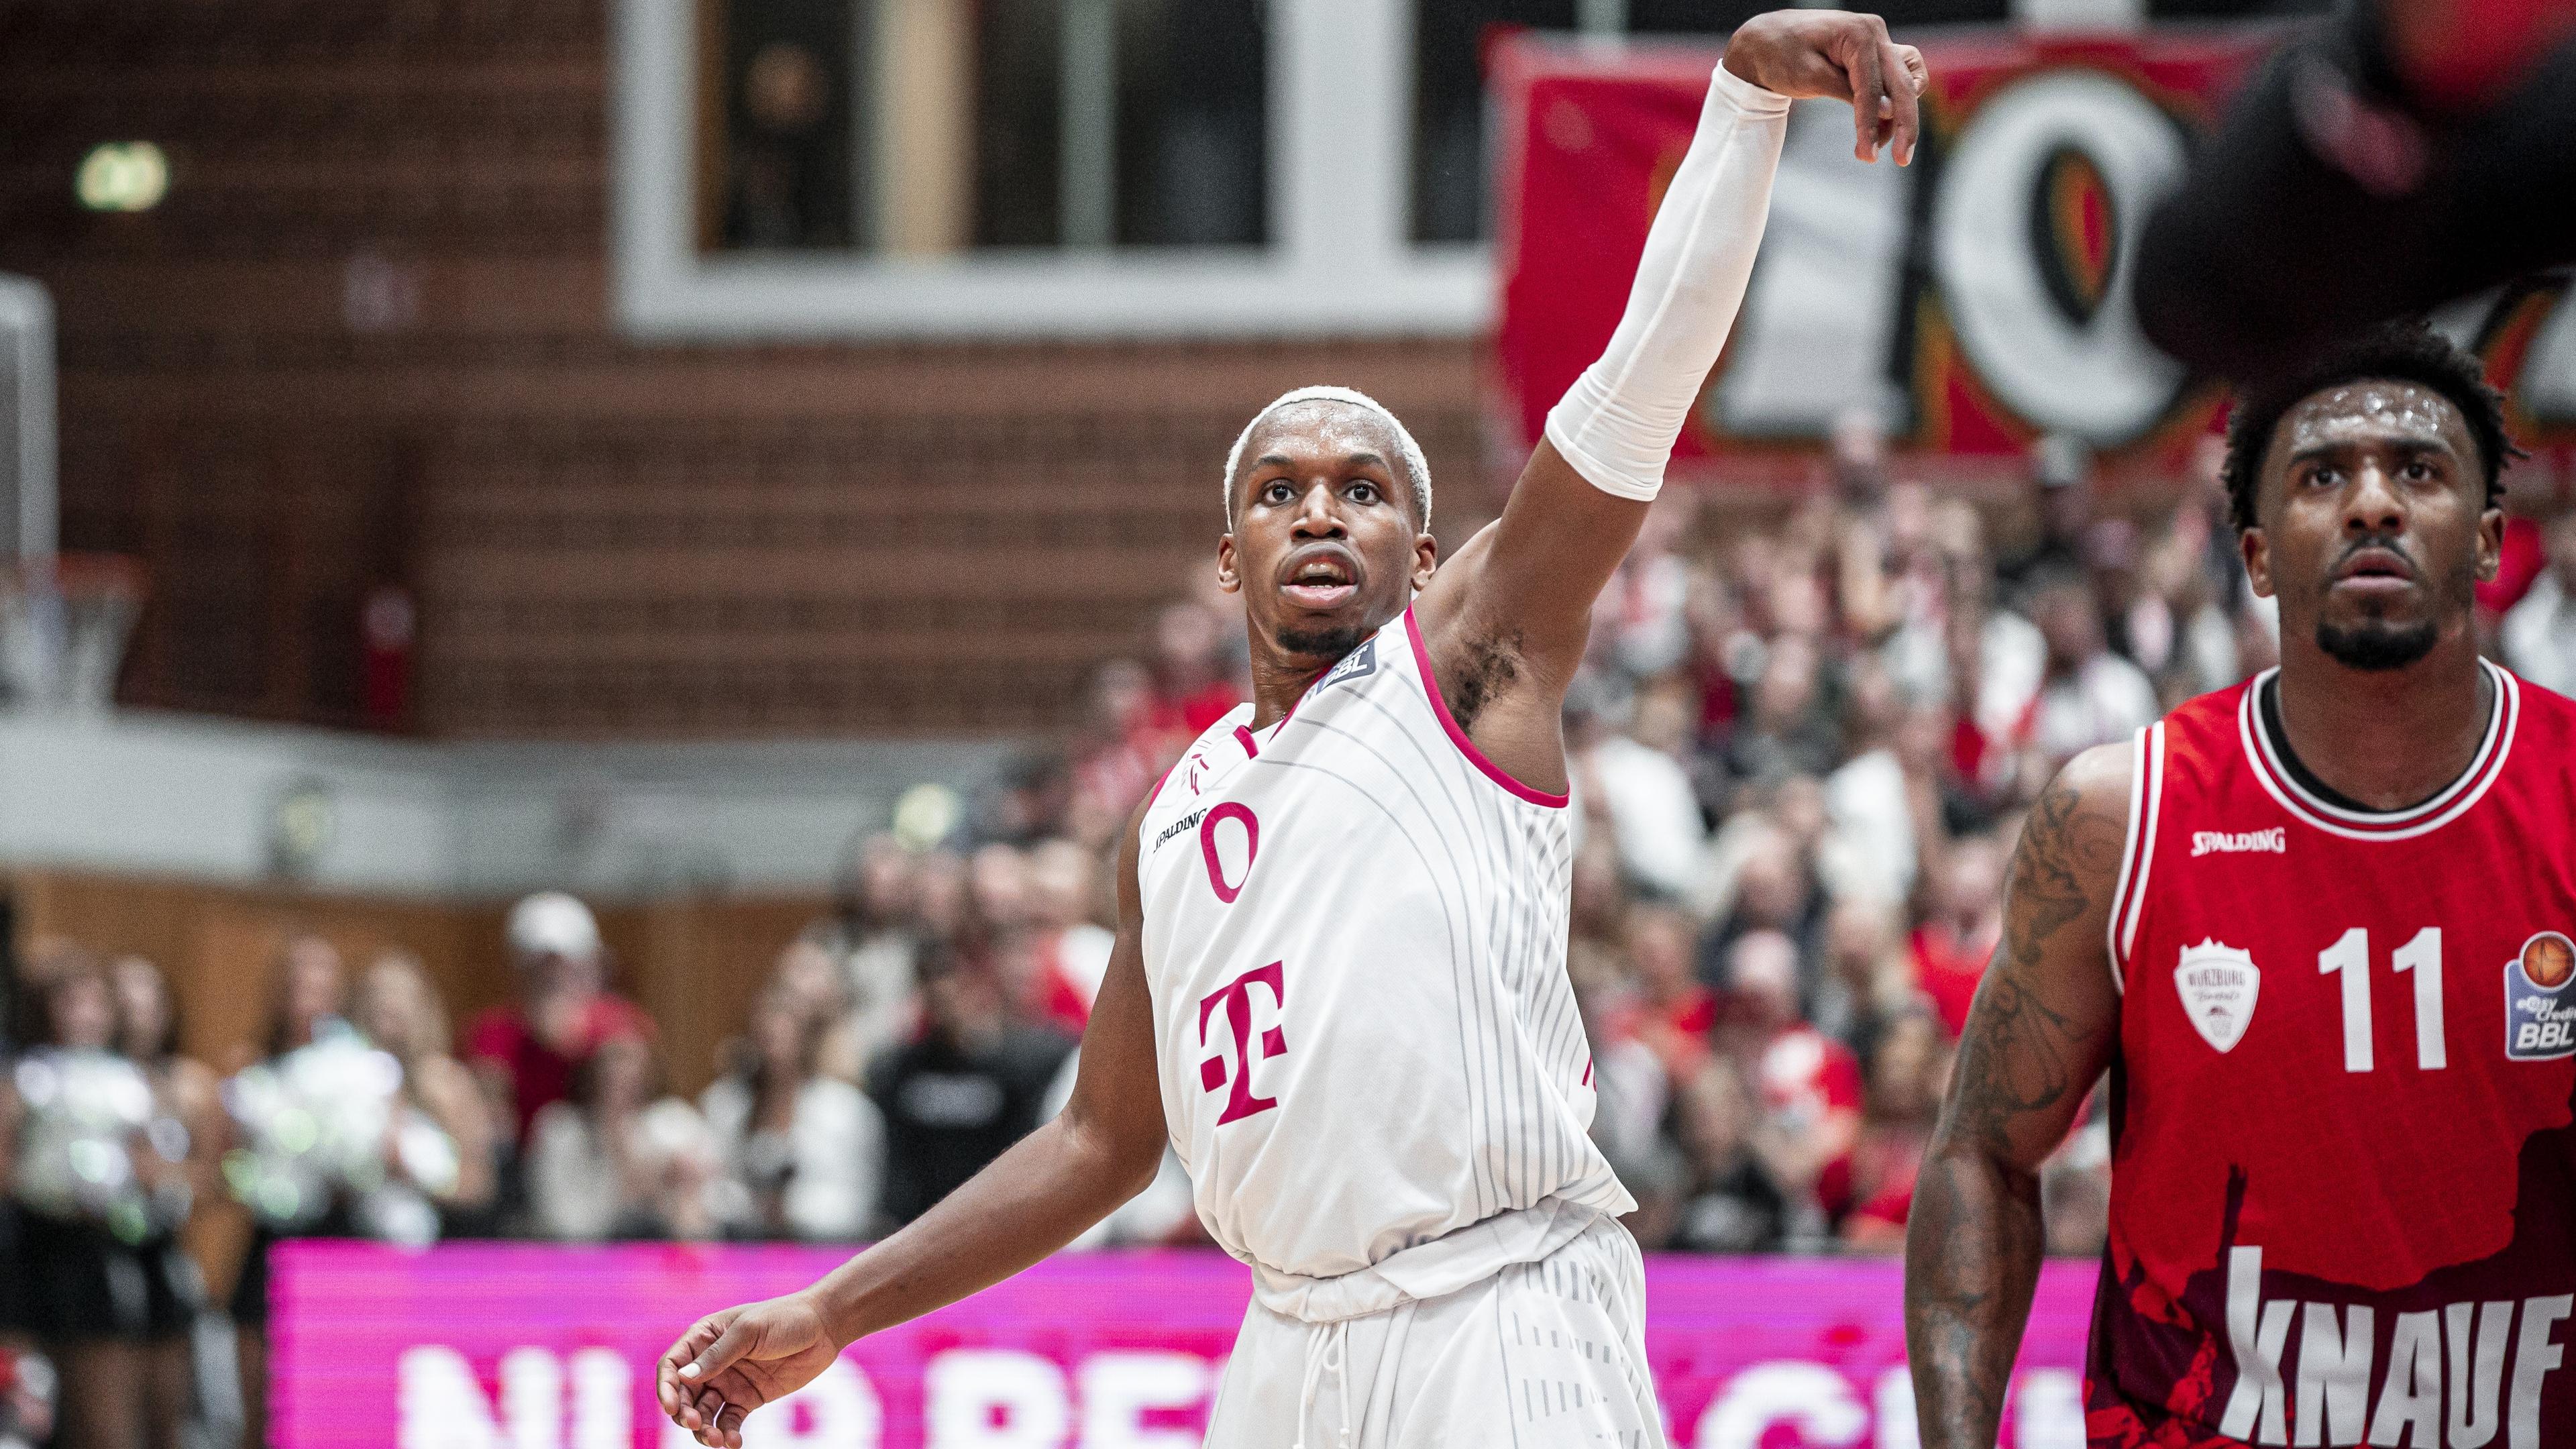 Die Telekom Baskets Bonn setzen sich im ersten Saisonspiel der easyCredit Basketball Bundesliga deutlich bei den Würzburg Baskets durch. Das 96:71 ist zu keinem Zeitpunkt gefährdet, Neuzugang TJ Shorts avanciert mit 22 Zählern zum Topscorer.